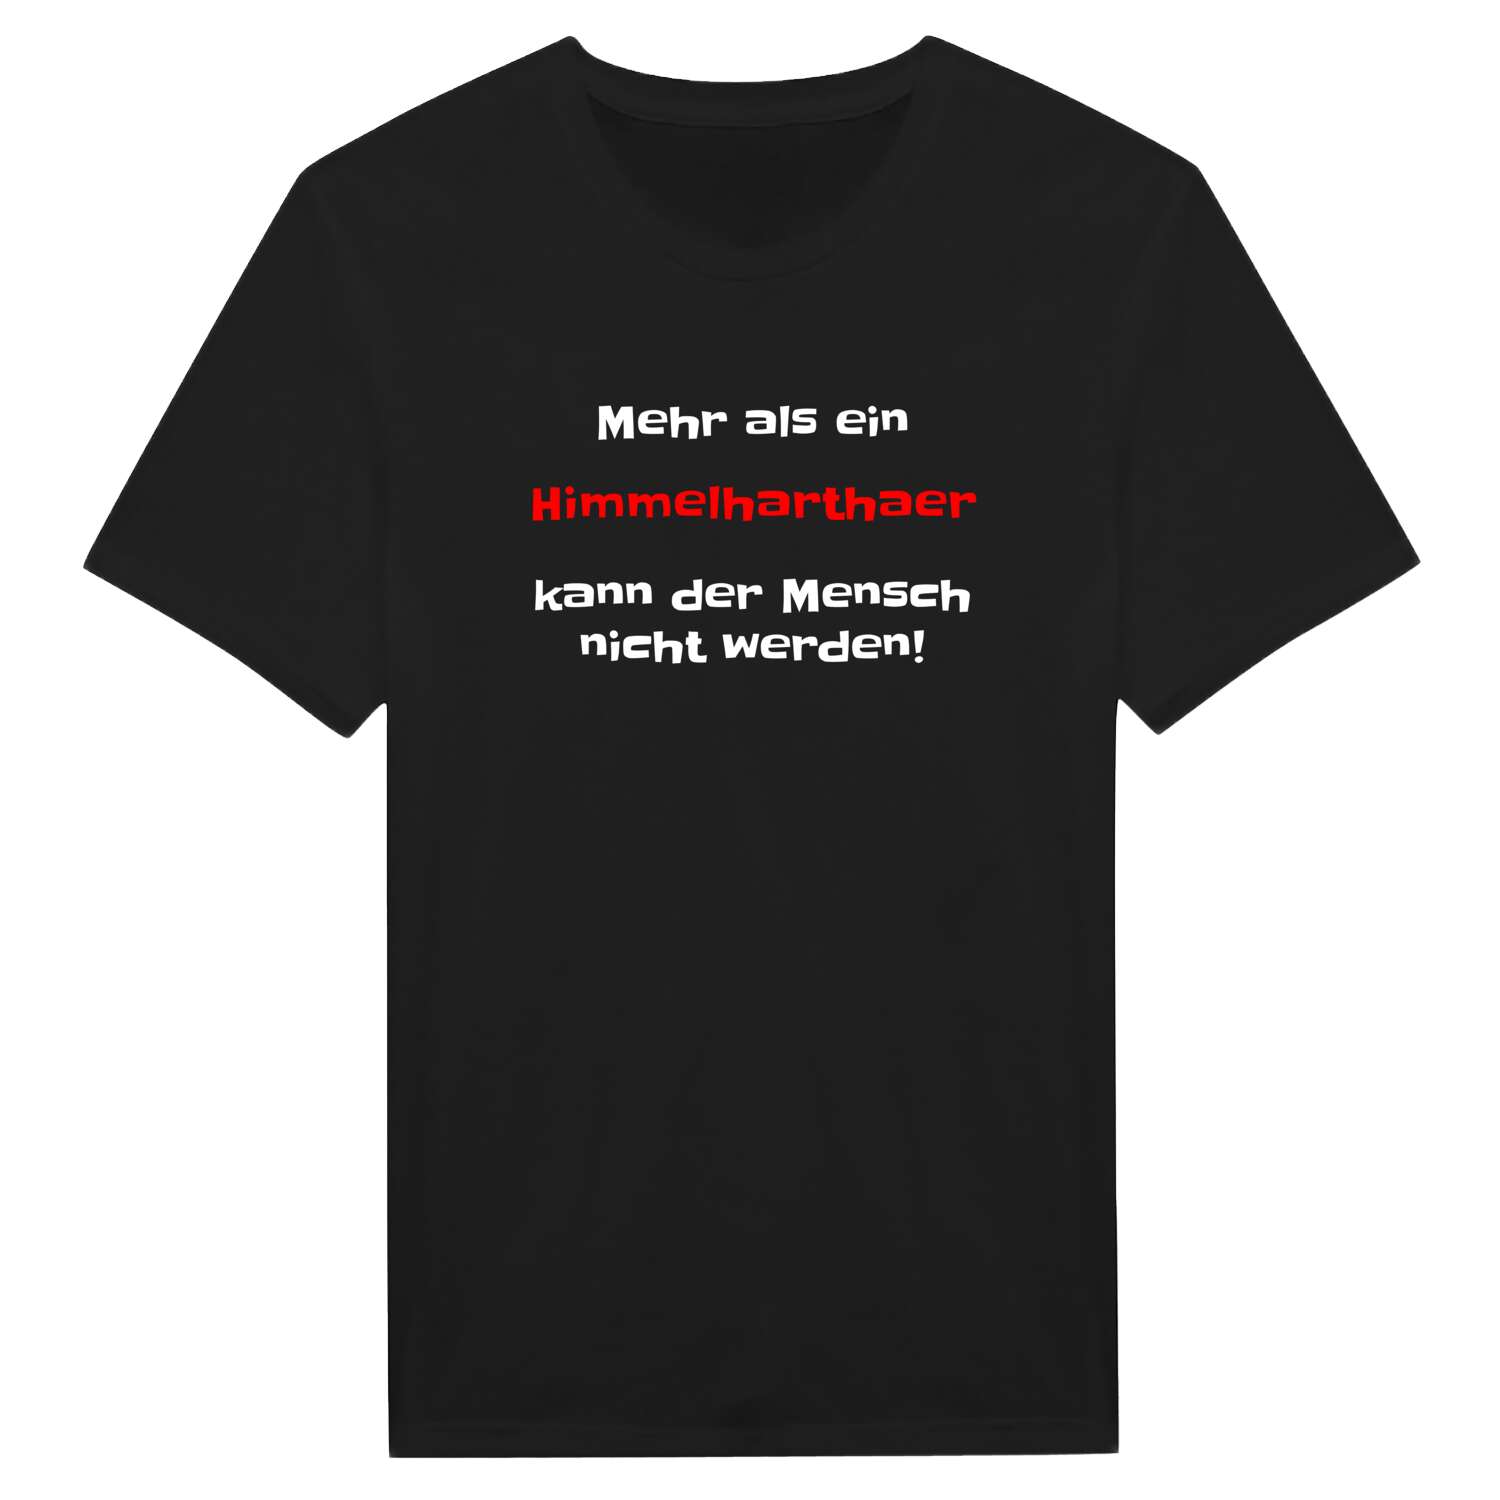 Himmelhartha T-Shirt »Mehr als ein«